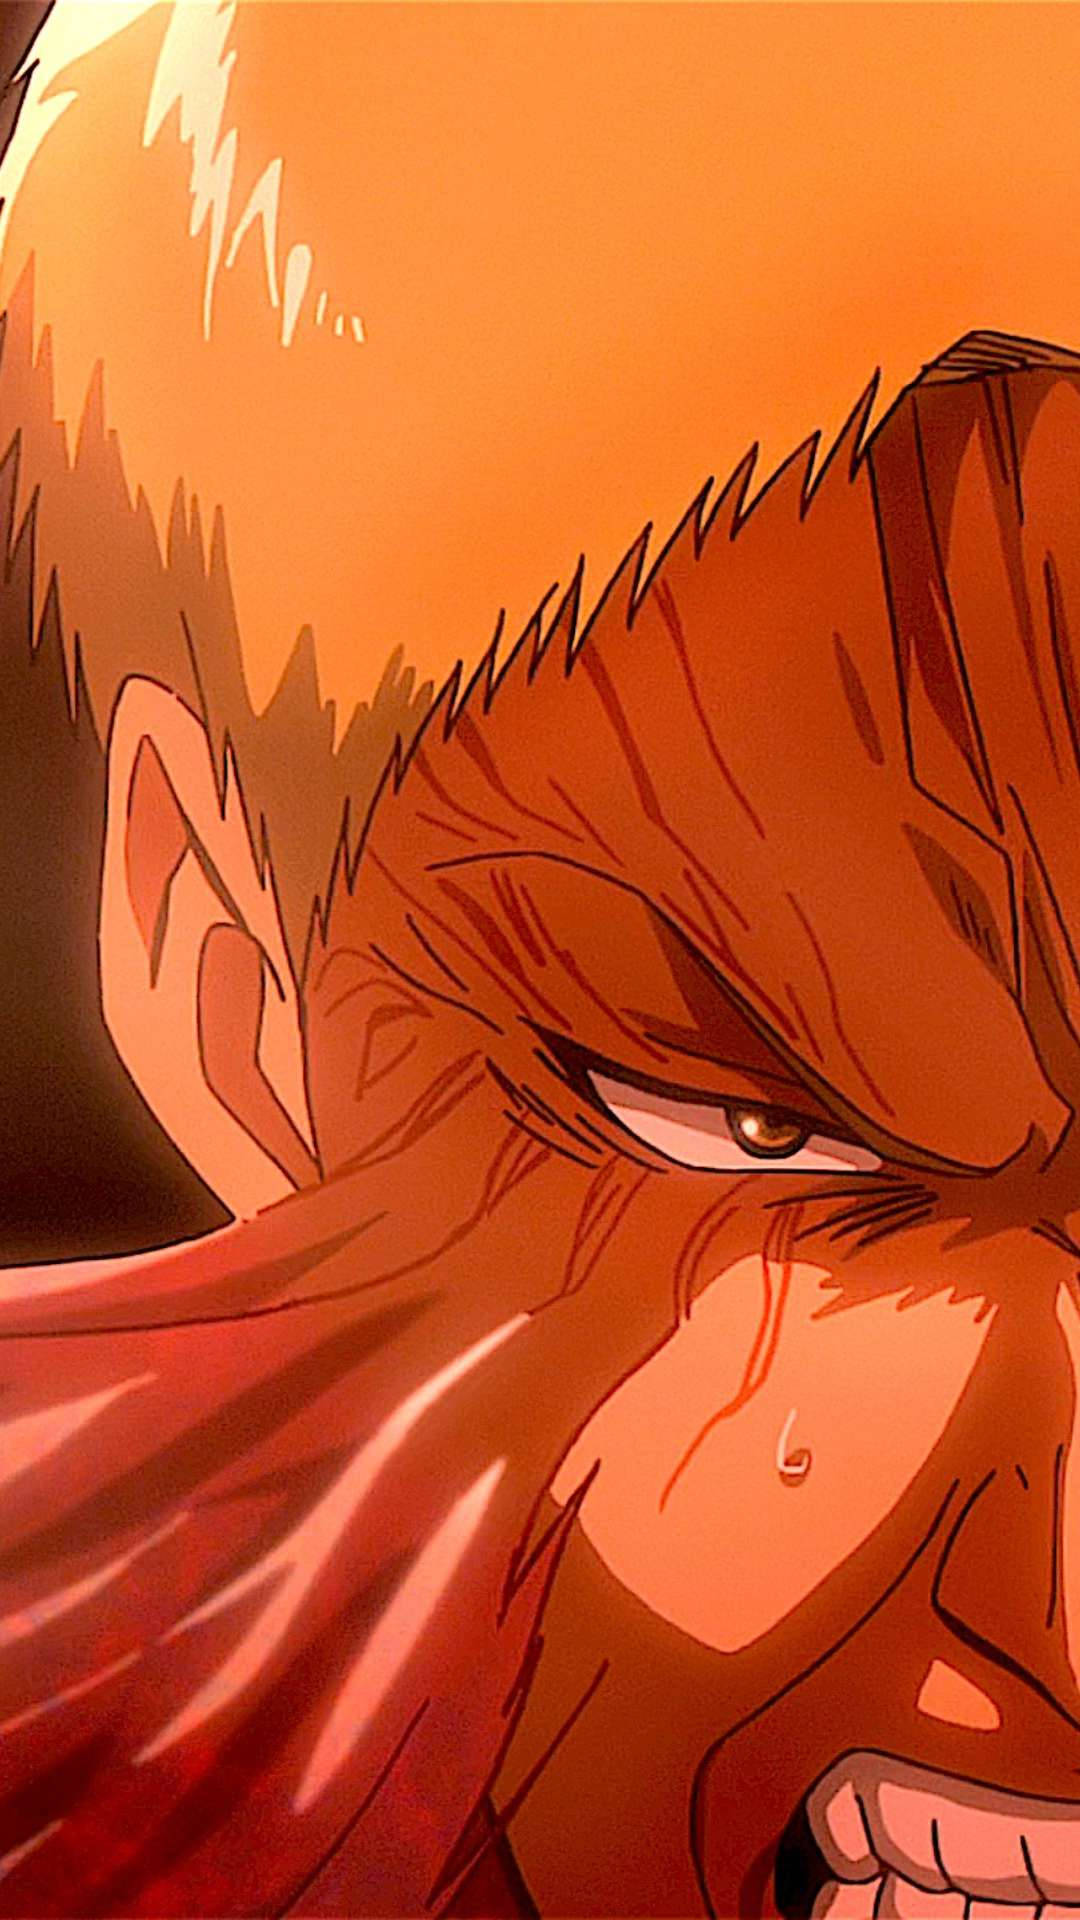 En tæt skud af en Anime-karakter med et rødt ansigt. Wallpaper